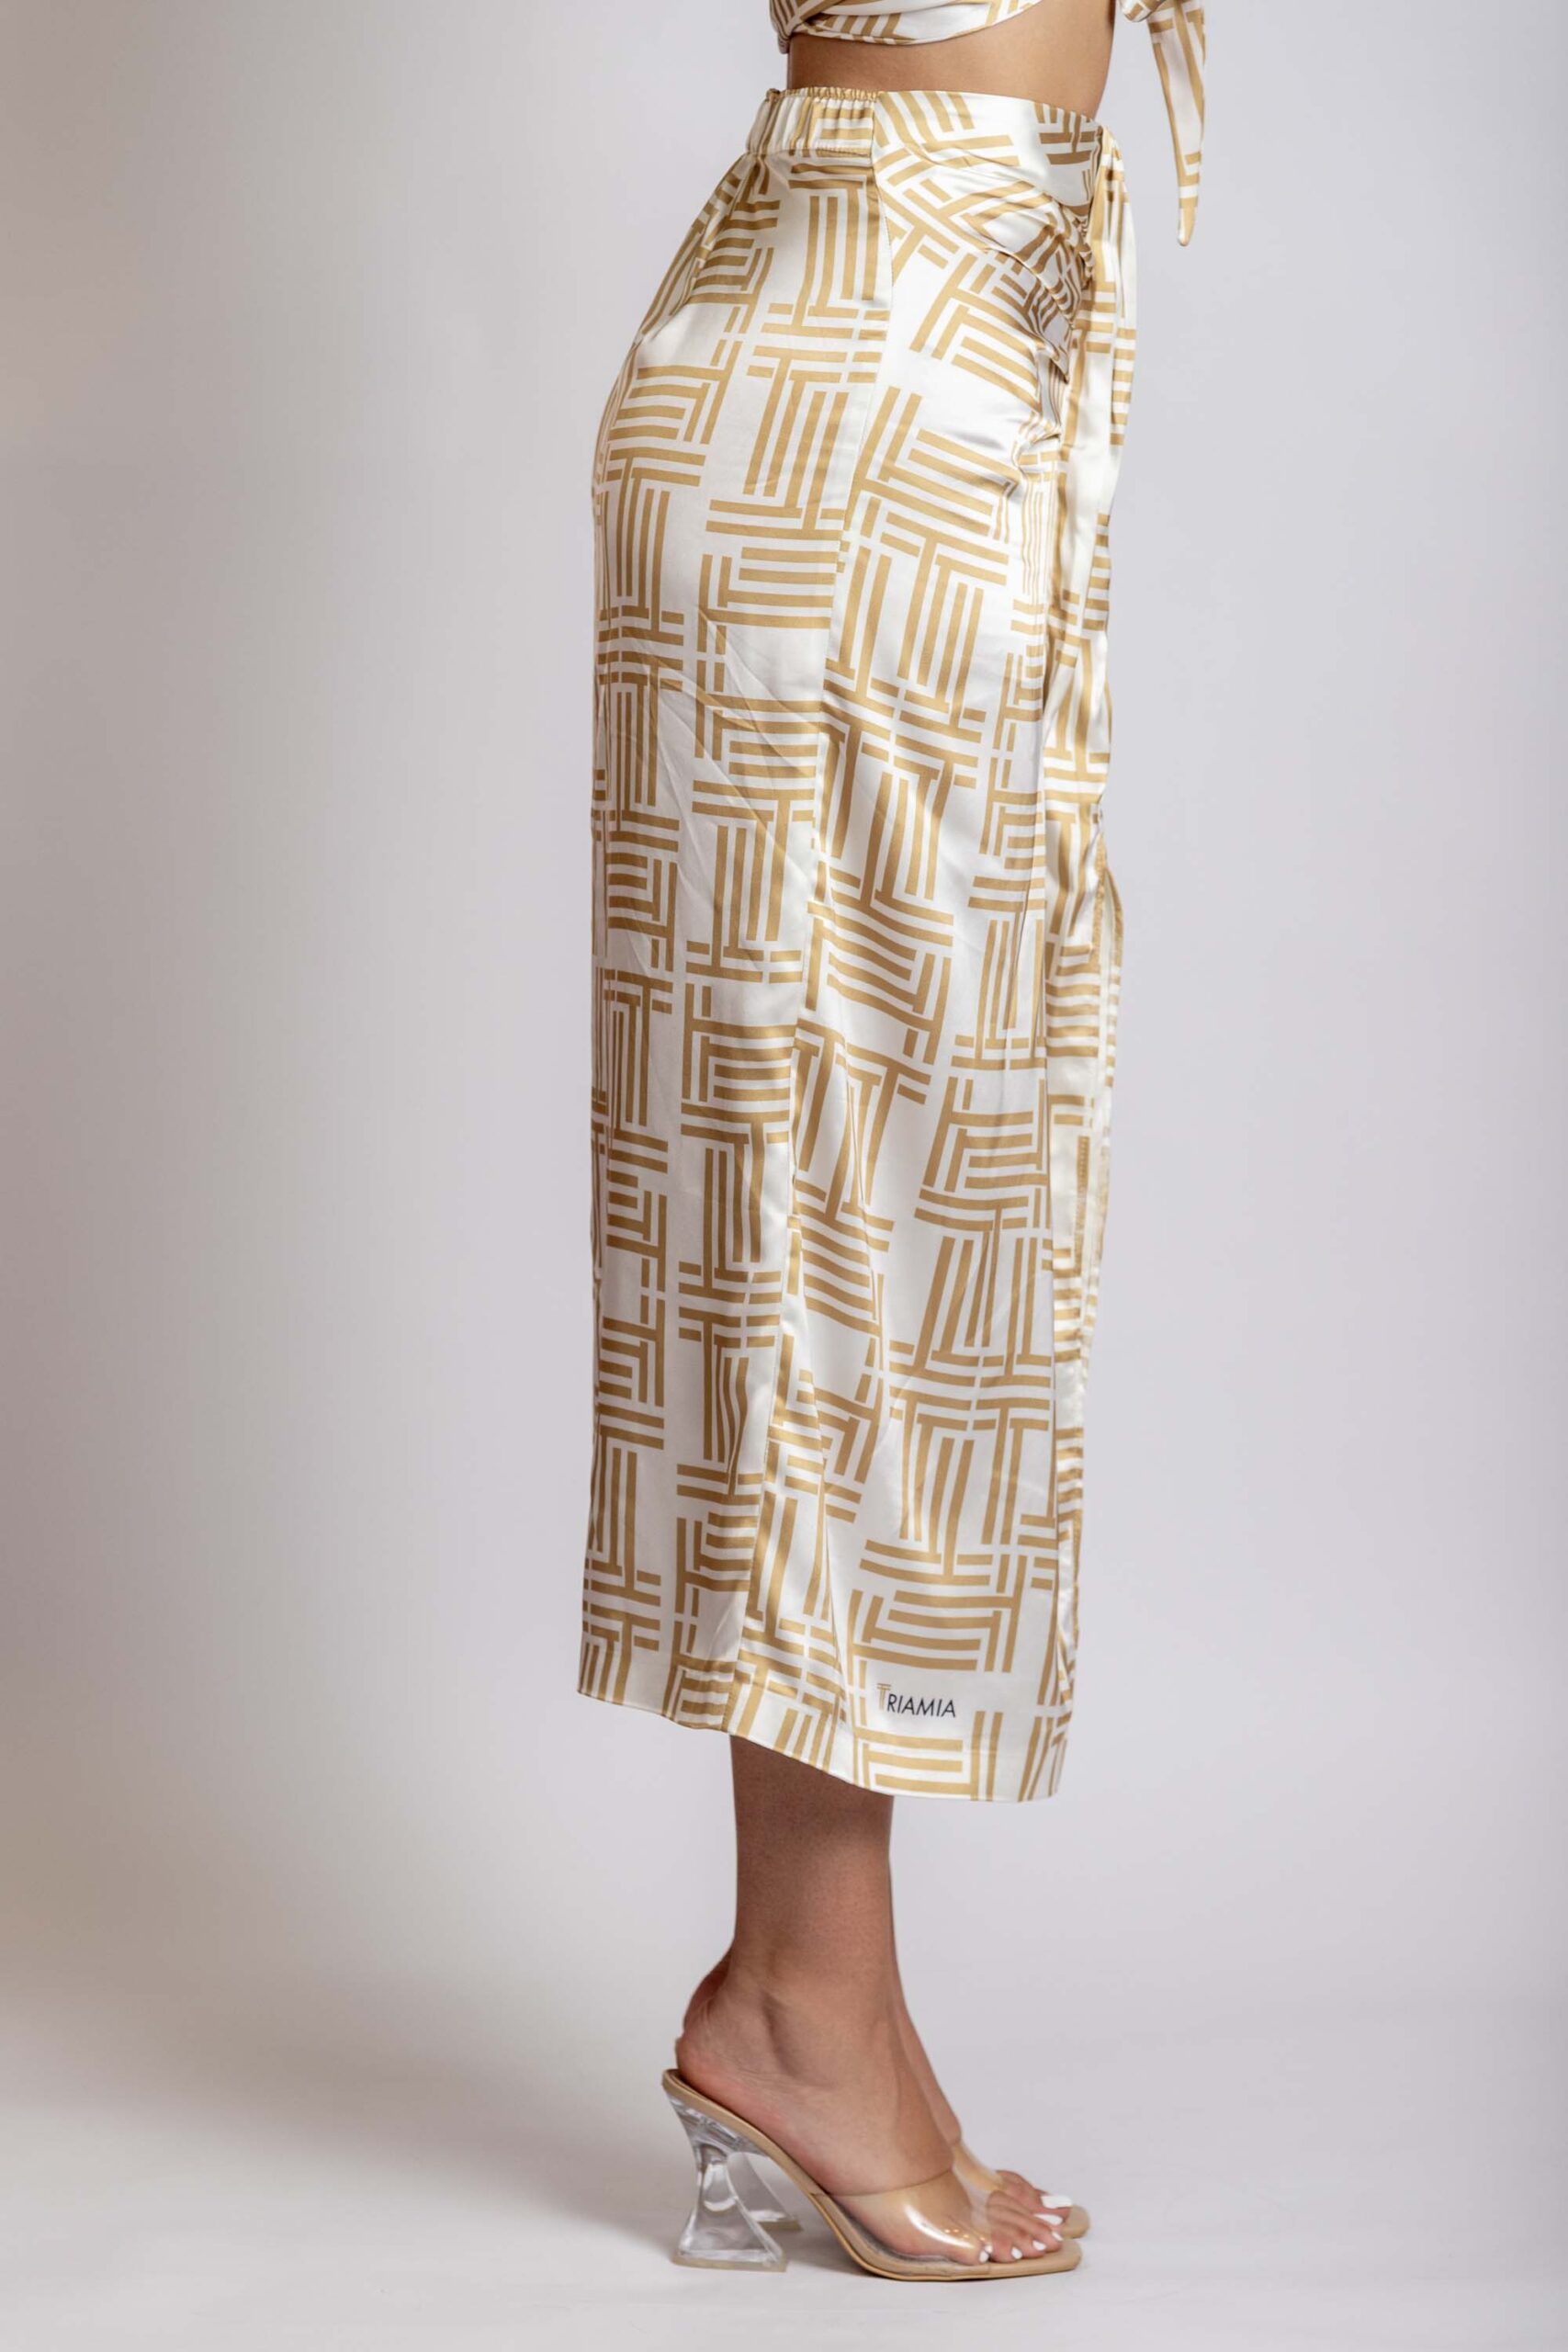 Midi Skirt with triamia logo print, side.